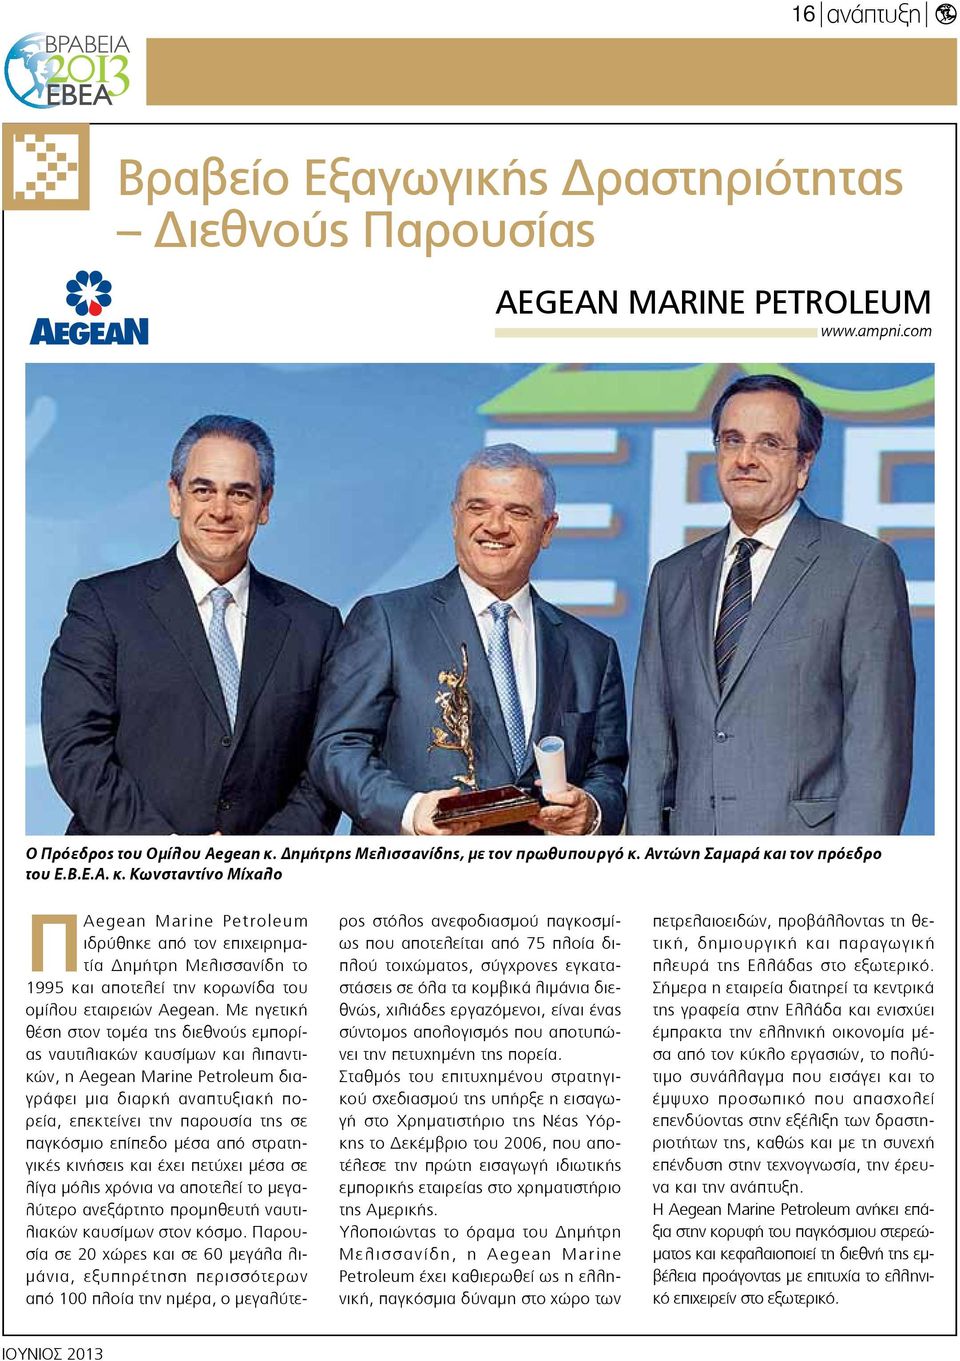 Με ηγετική θέση στον τομέα της διεθνούς εμπορίας ναυτιλιακών καυσίμων και λιπαντικών, η Aegean Marine Petroleum διαγράφει μια διαρκή αναπτυξιακή πορεία, επεκτείνει την παρουσία της σε παγκόσμιο